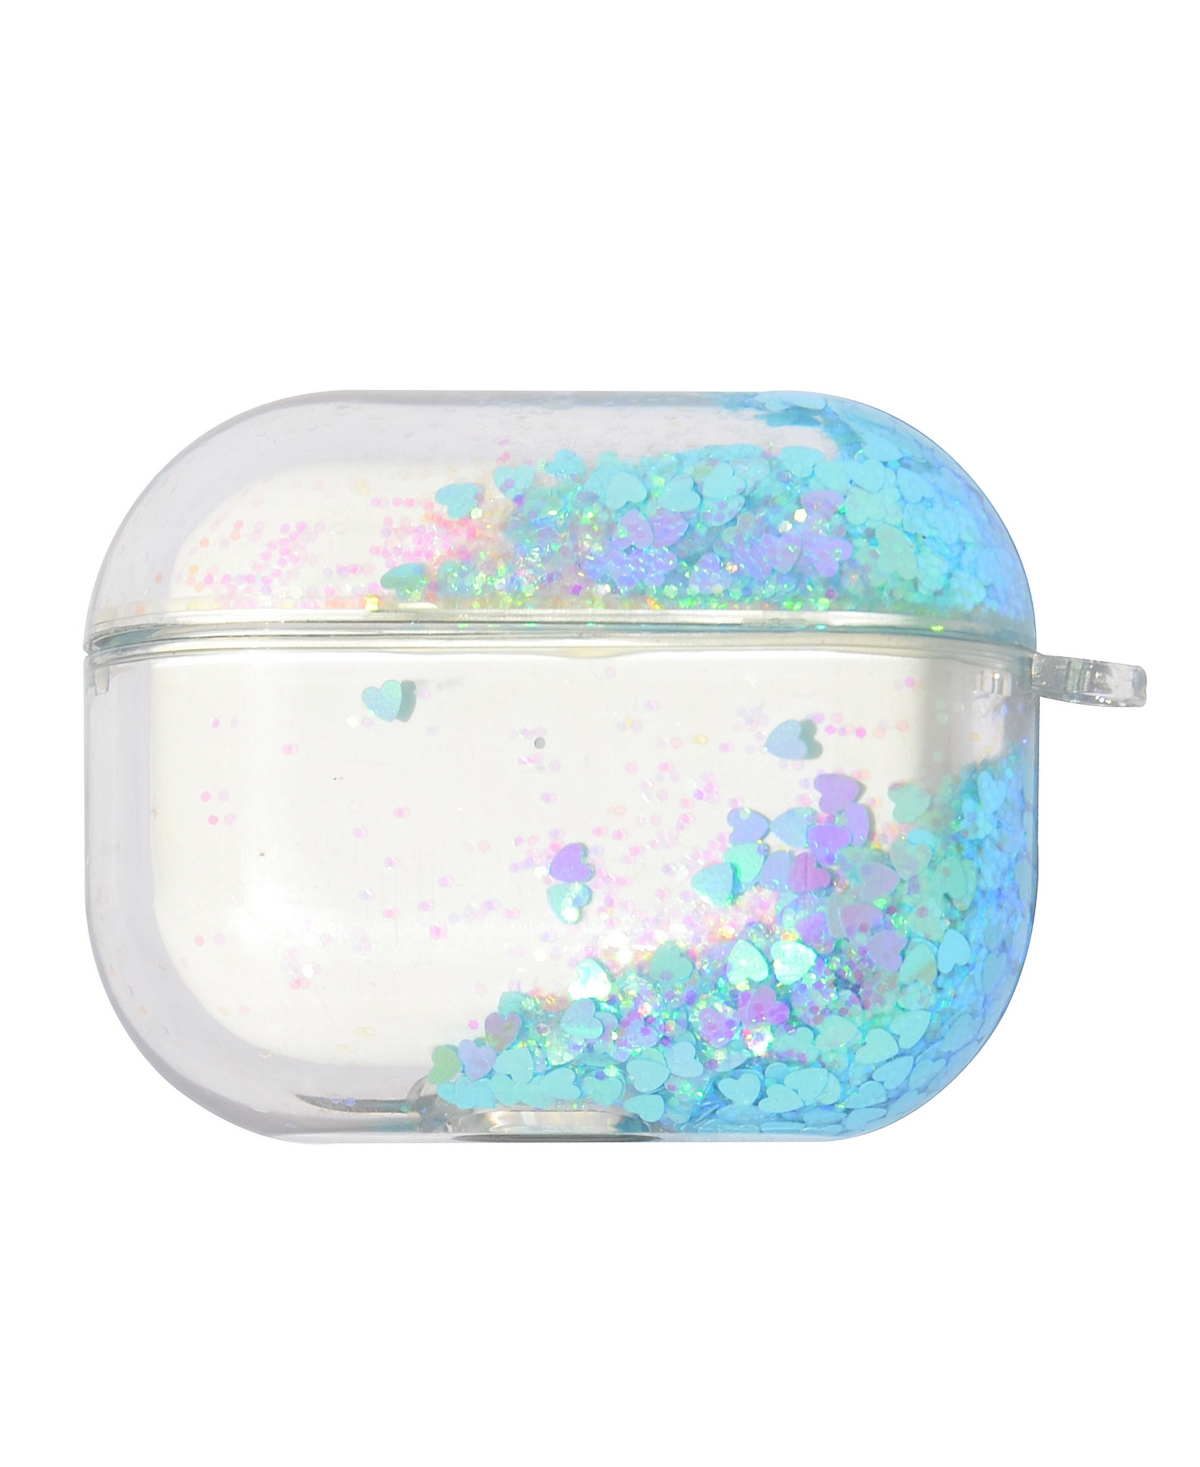 Gabba Goods Delia's Liquid Glitter Hard-shell Air Pods Pro Case In Multi-colored